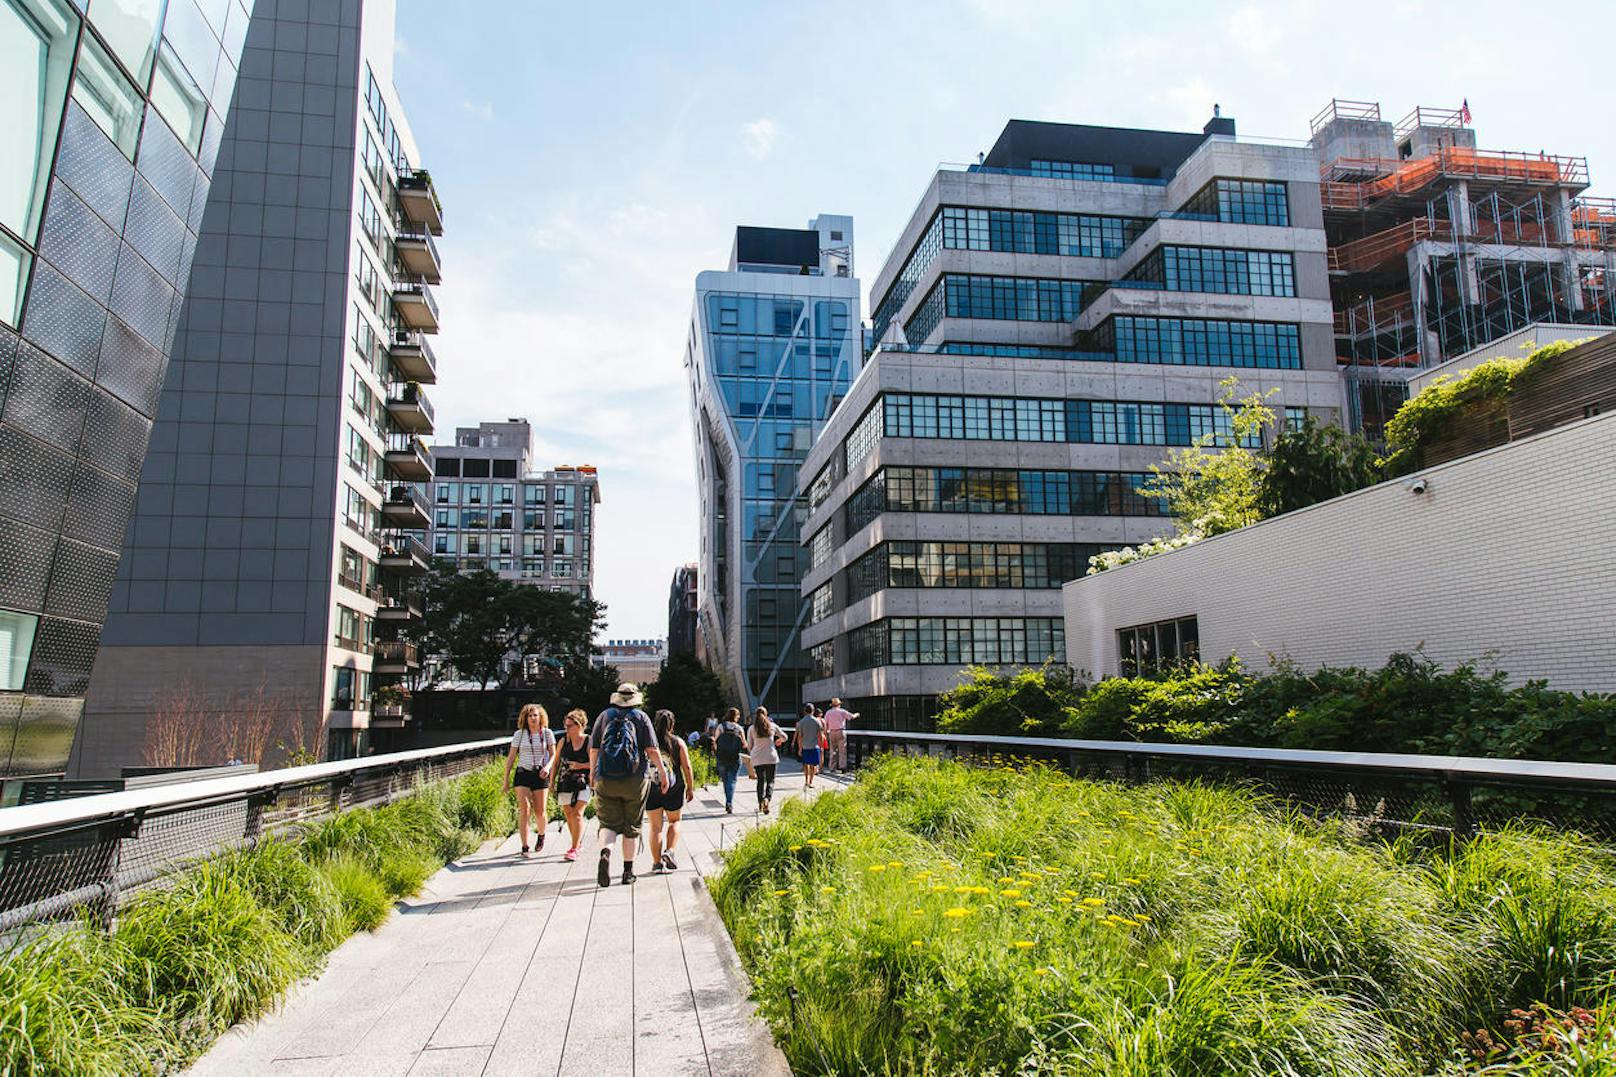 High Line Park - der High Line Park ist ein begrünter Wanderweg der auf einer stillgelegten Hochbahnstraße angelegt wurde. Hier kann man gemütlich spazieren, in der Sonne liegen, die Aussicht genießen, oder eines der kleinen Bistros besuchen. Viele Straßenkünstler zeigen hier ihre Talente. Der Eintritt ist kostenlos!